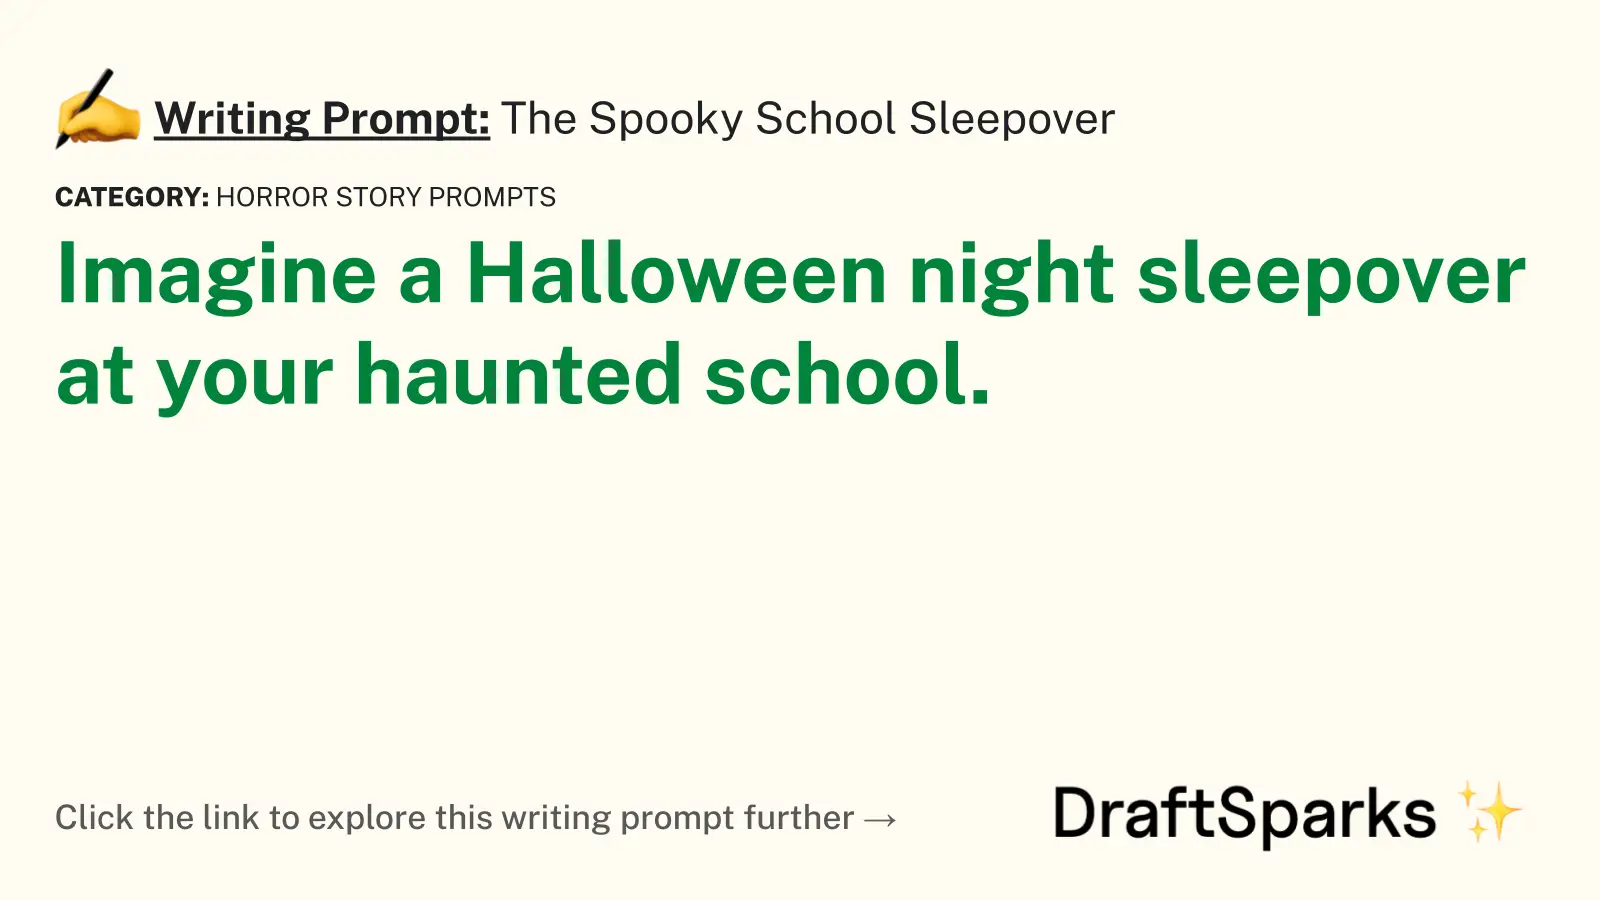 The Spooky School Sleepover